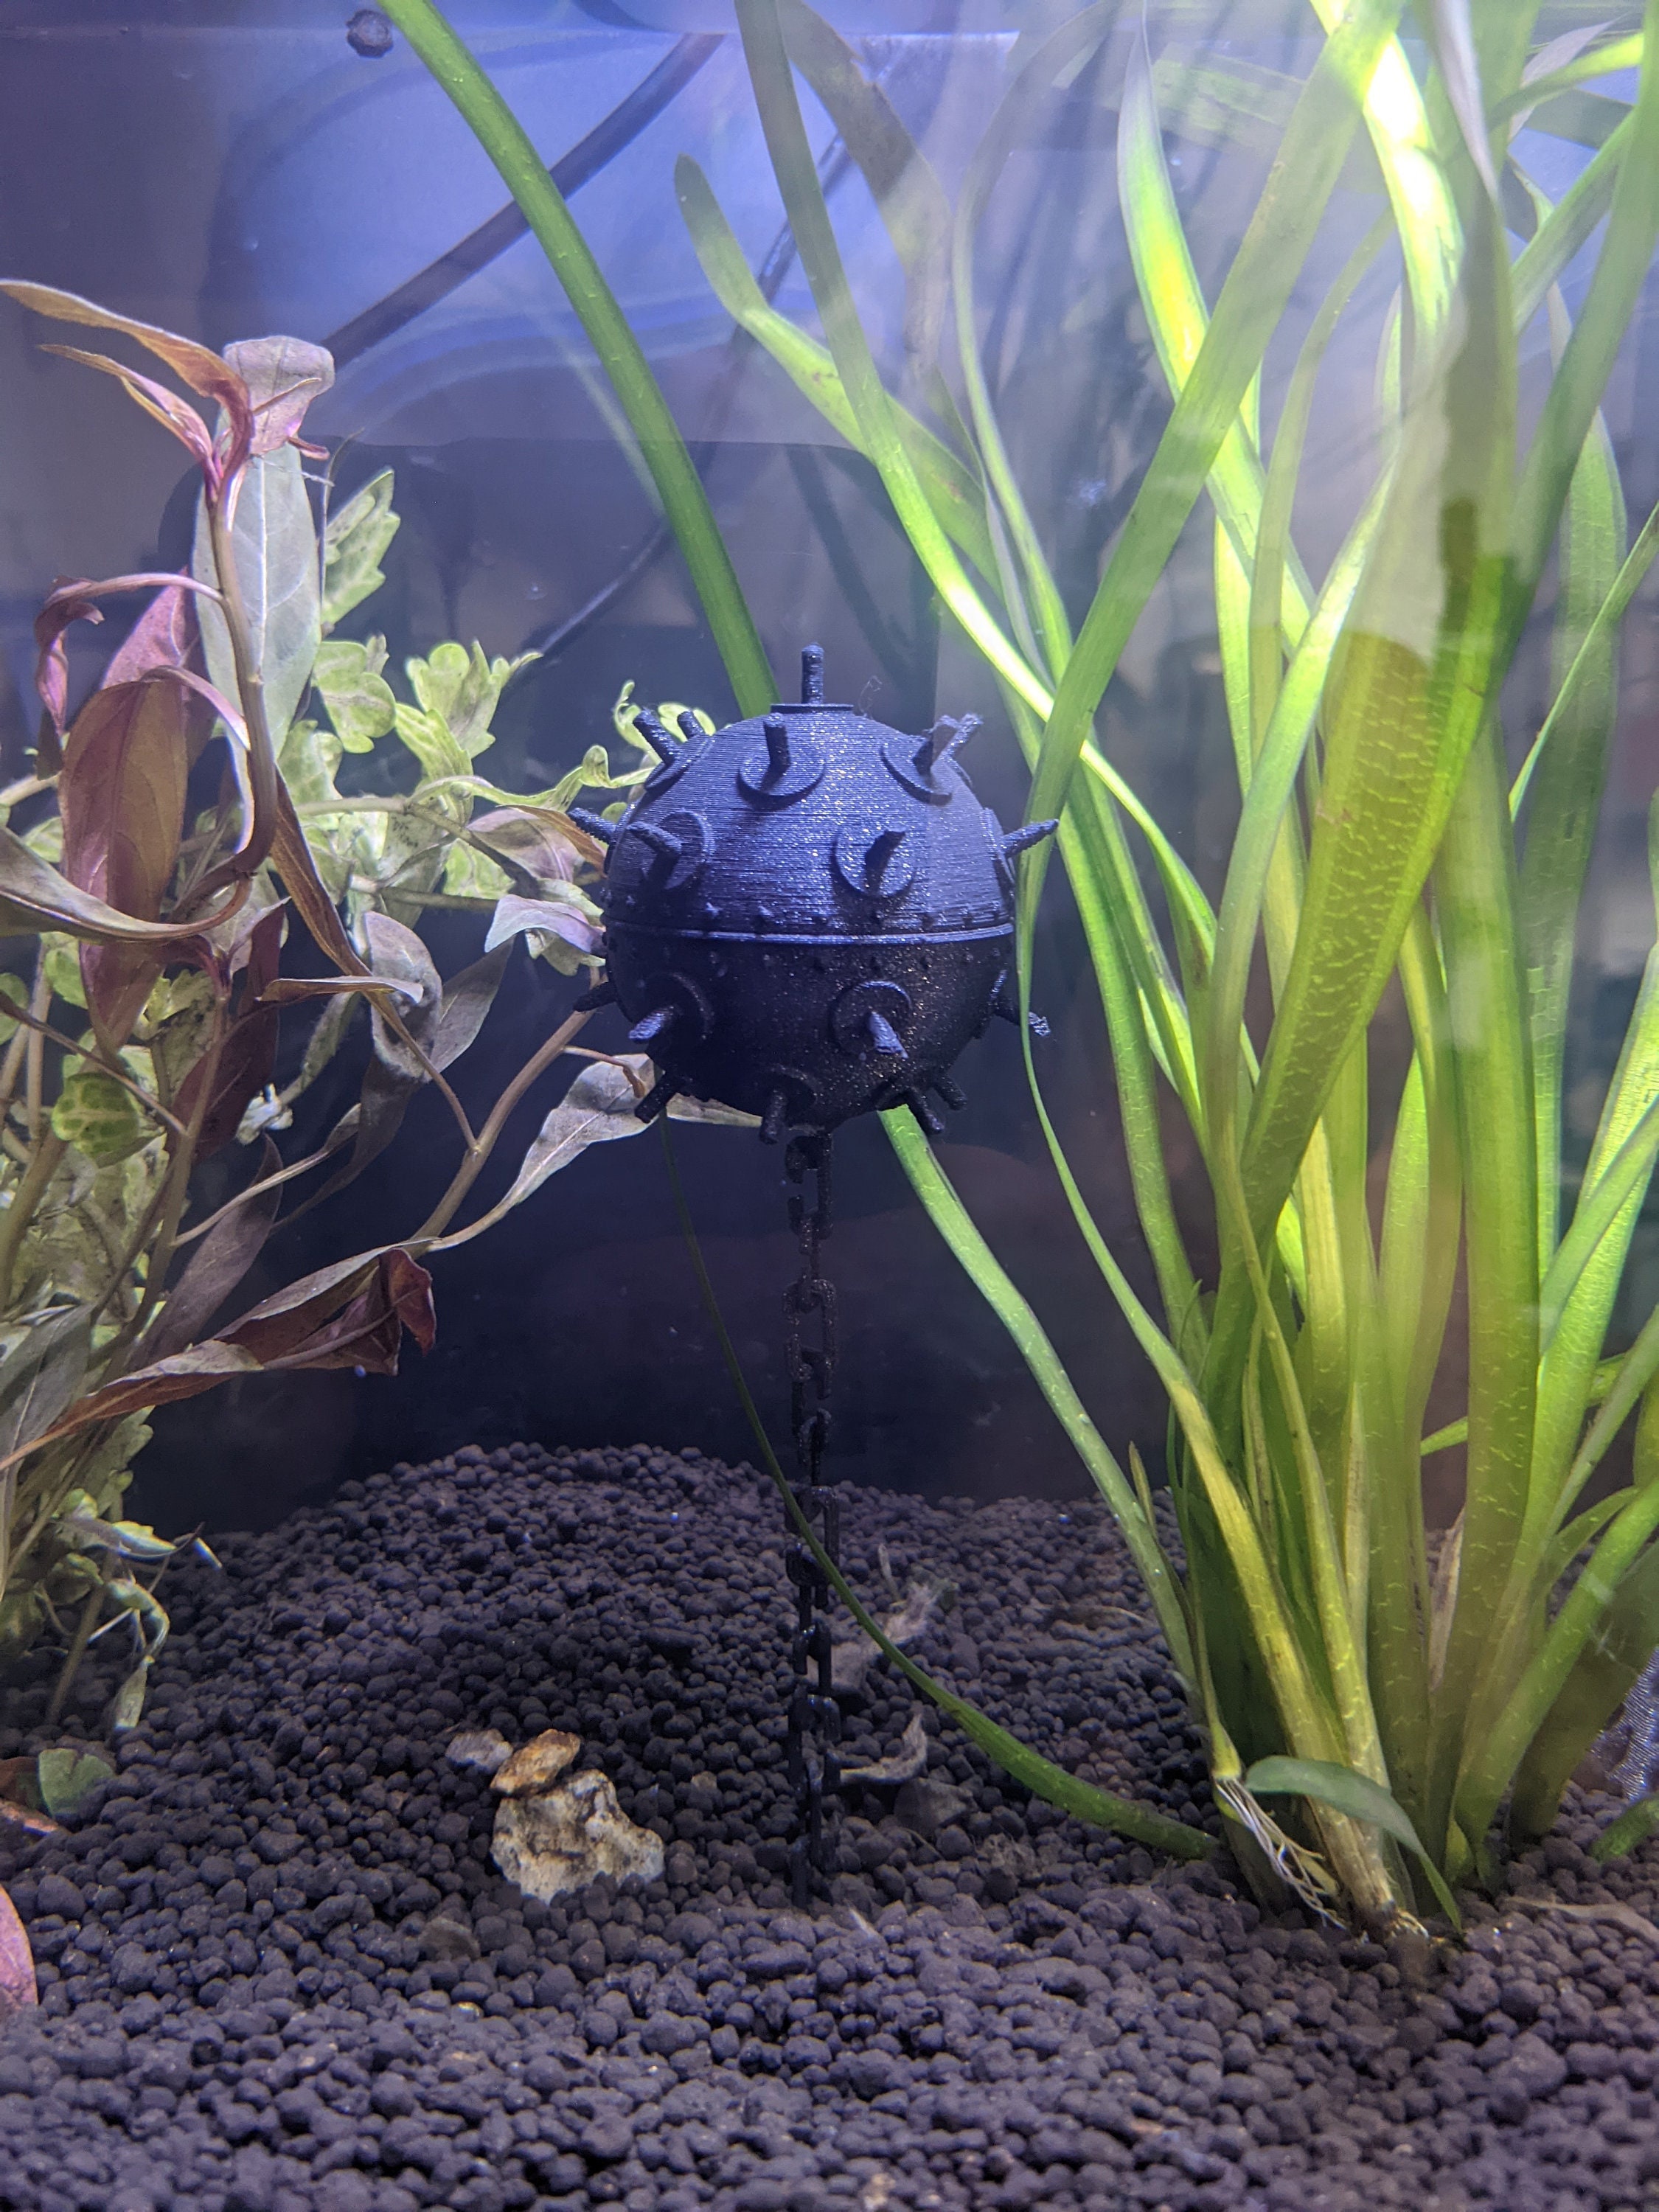 Aquarium Ornaments - Fish Tank Decorations